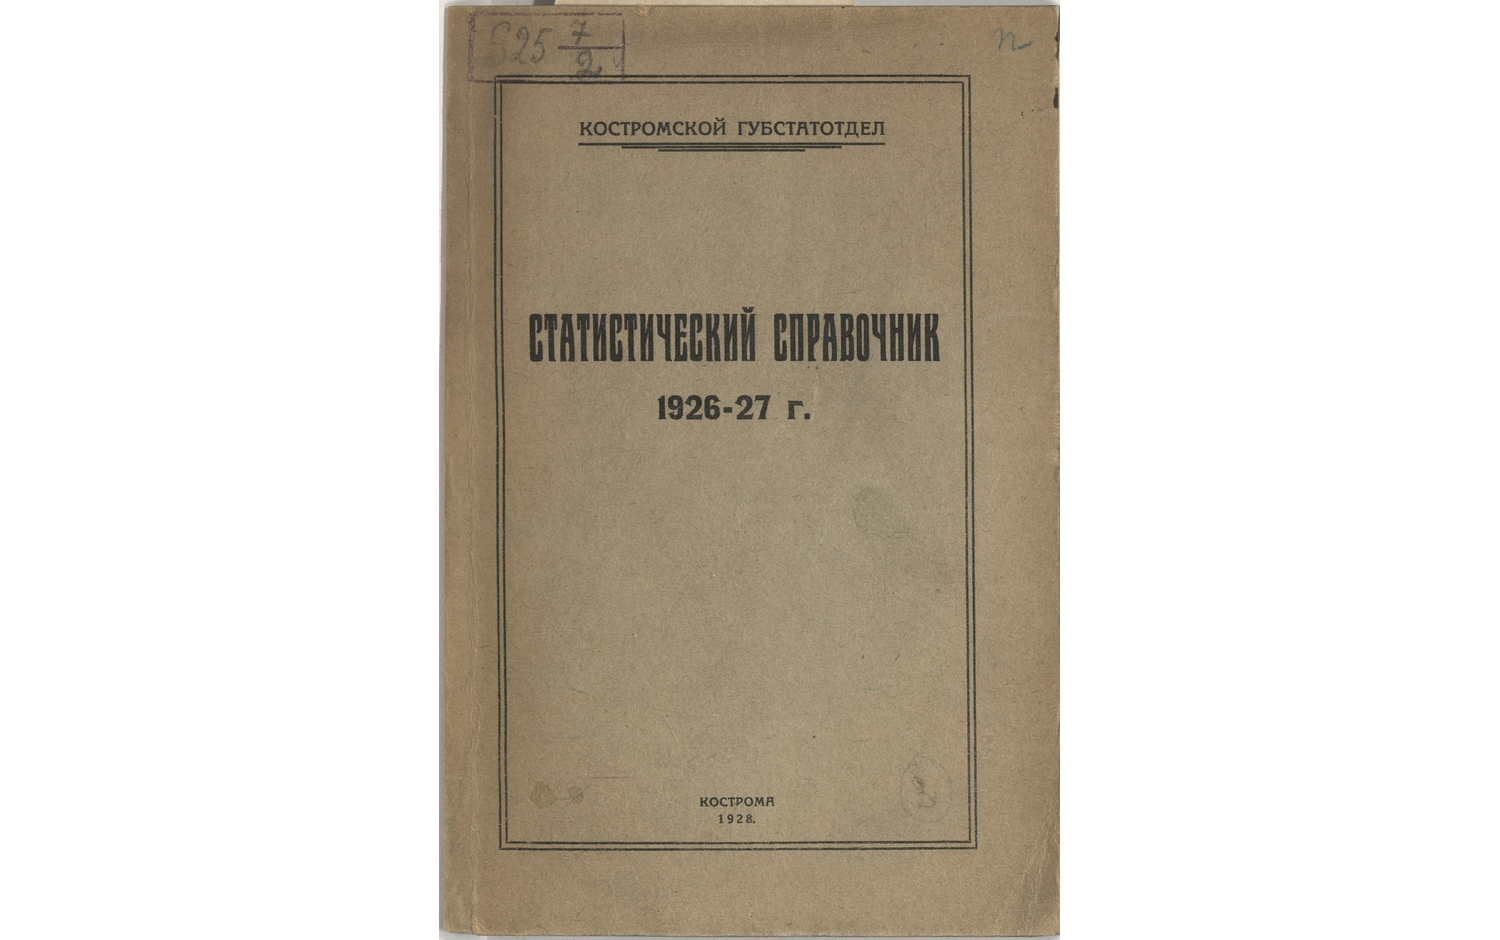 Статистический справочник (1926-27 г.)